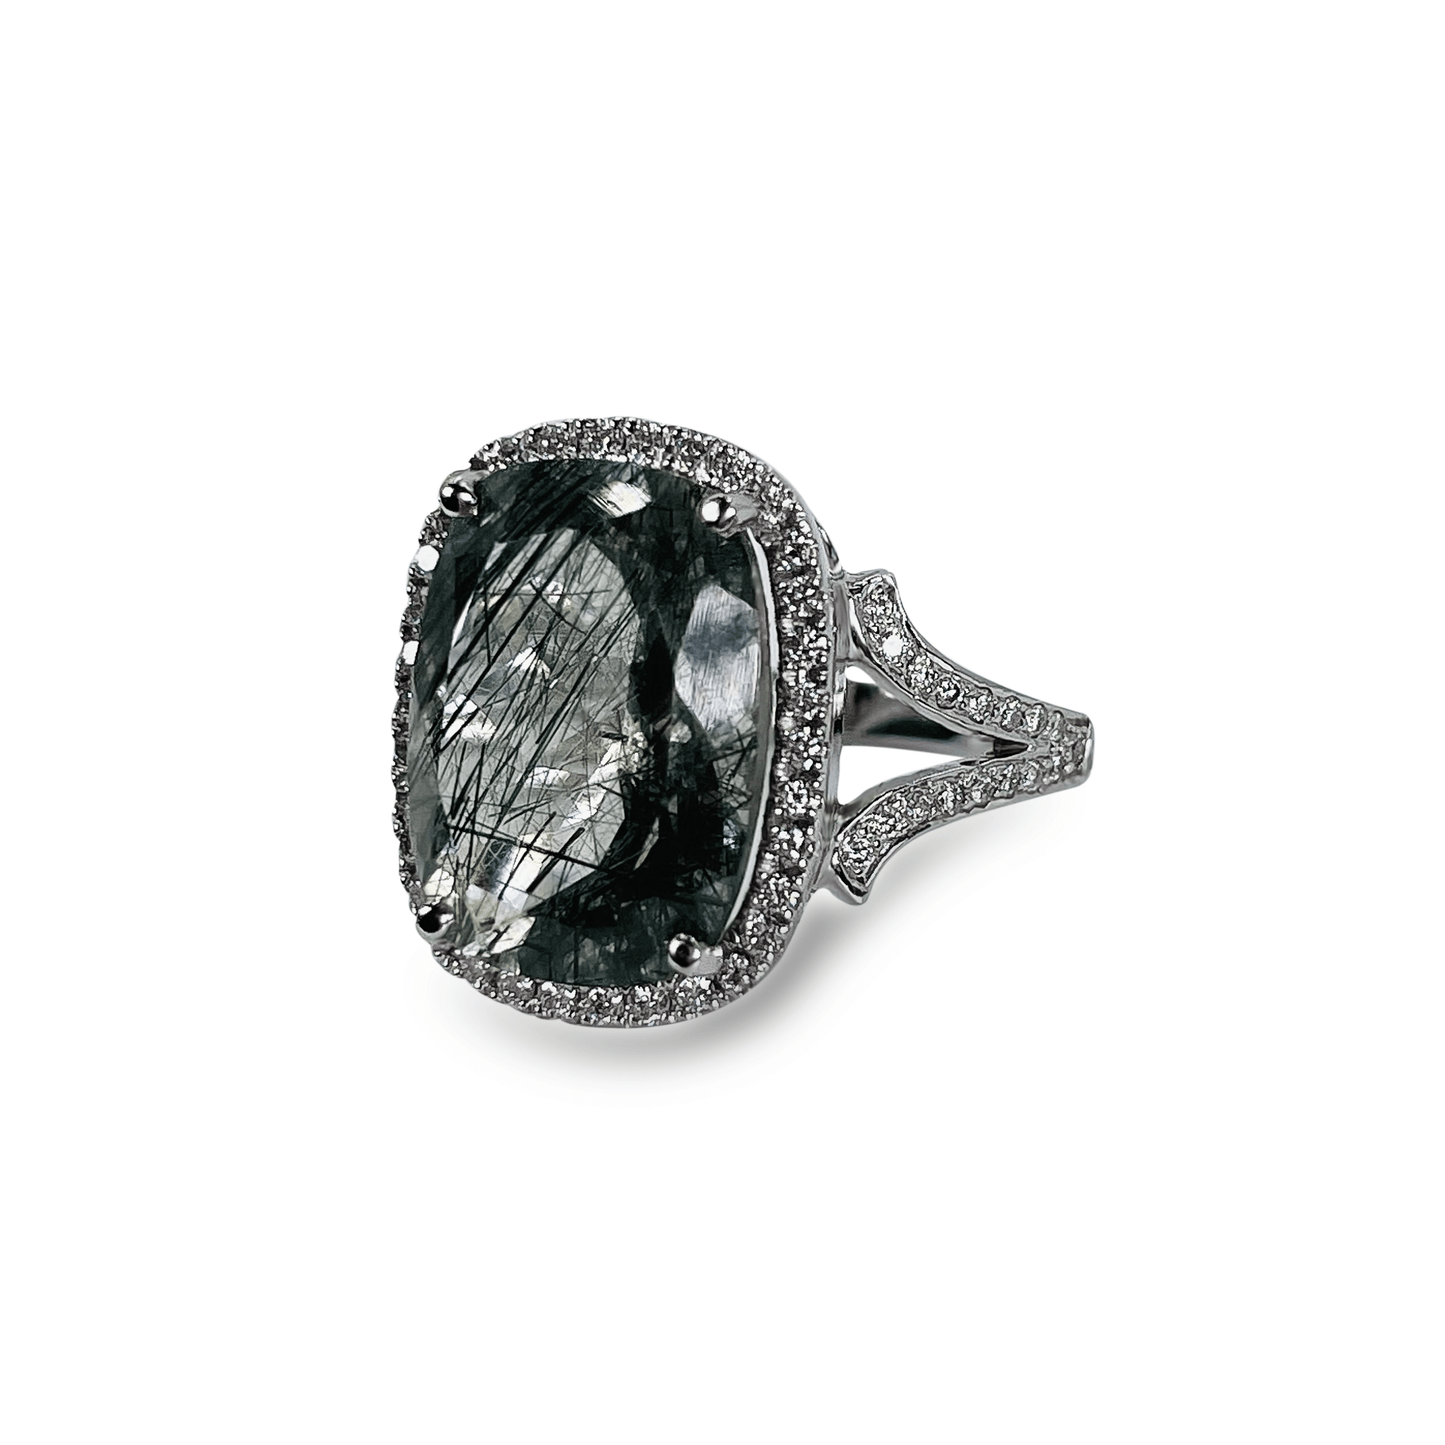 Green Rutilated Quartz Ring with Diamond Halo- جرس - Luxury Diamond Jewelry shop Dubai - SABA DIAMONDS